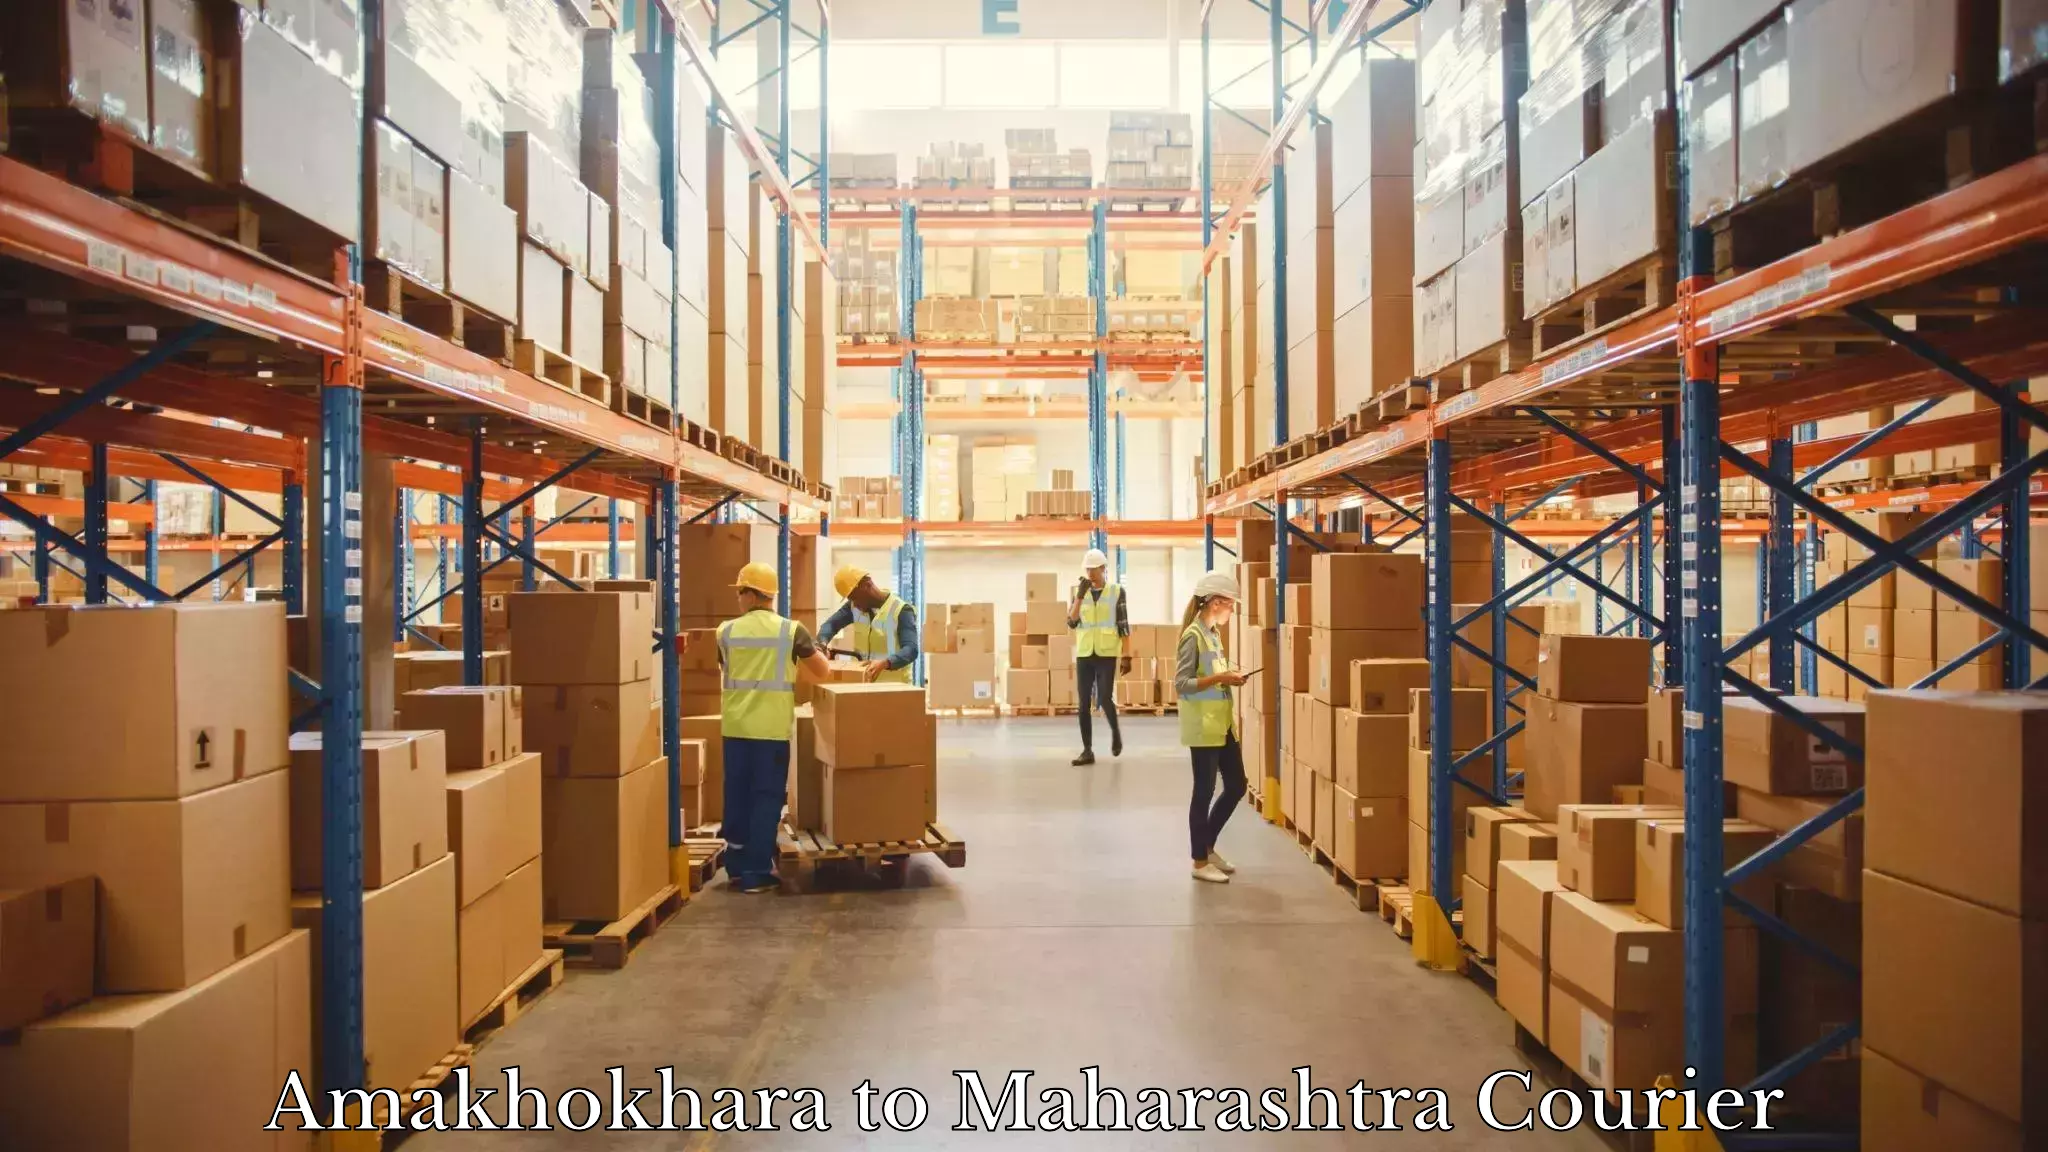 Local delivery service Amakhokhara to Maharashtra